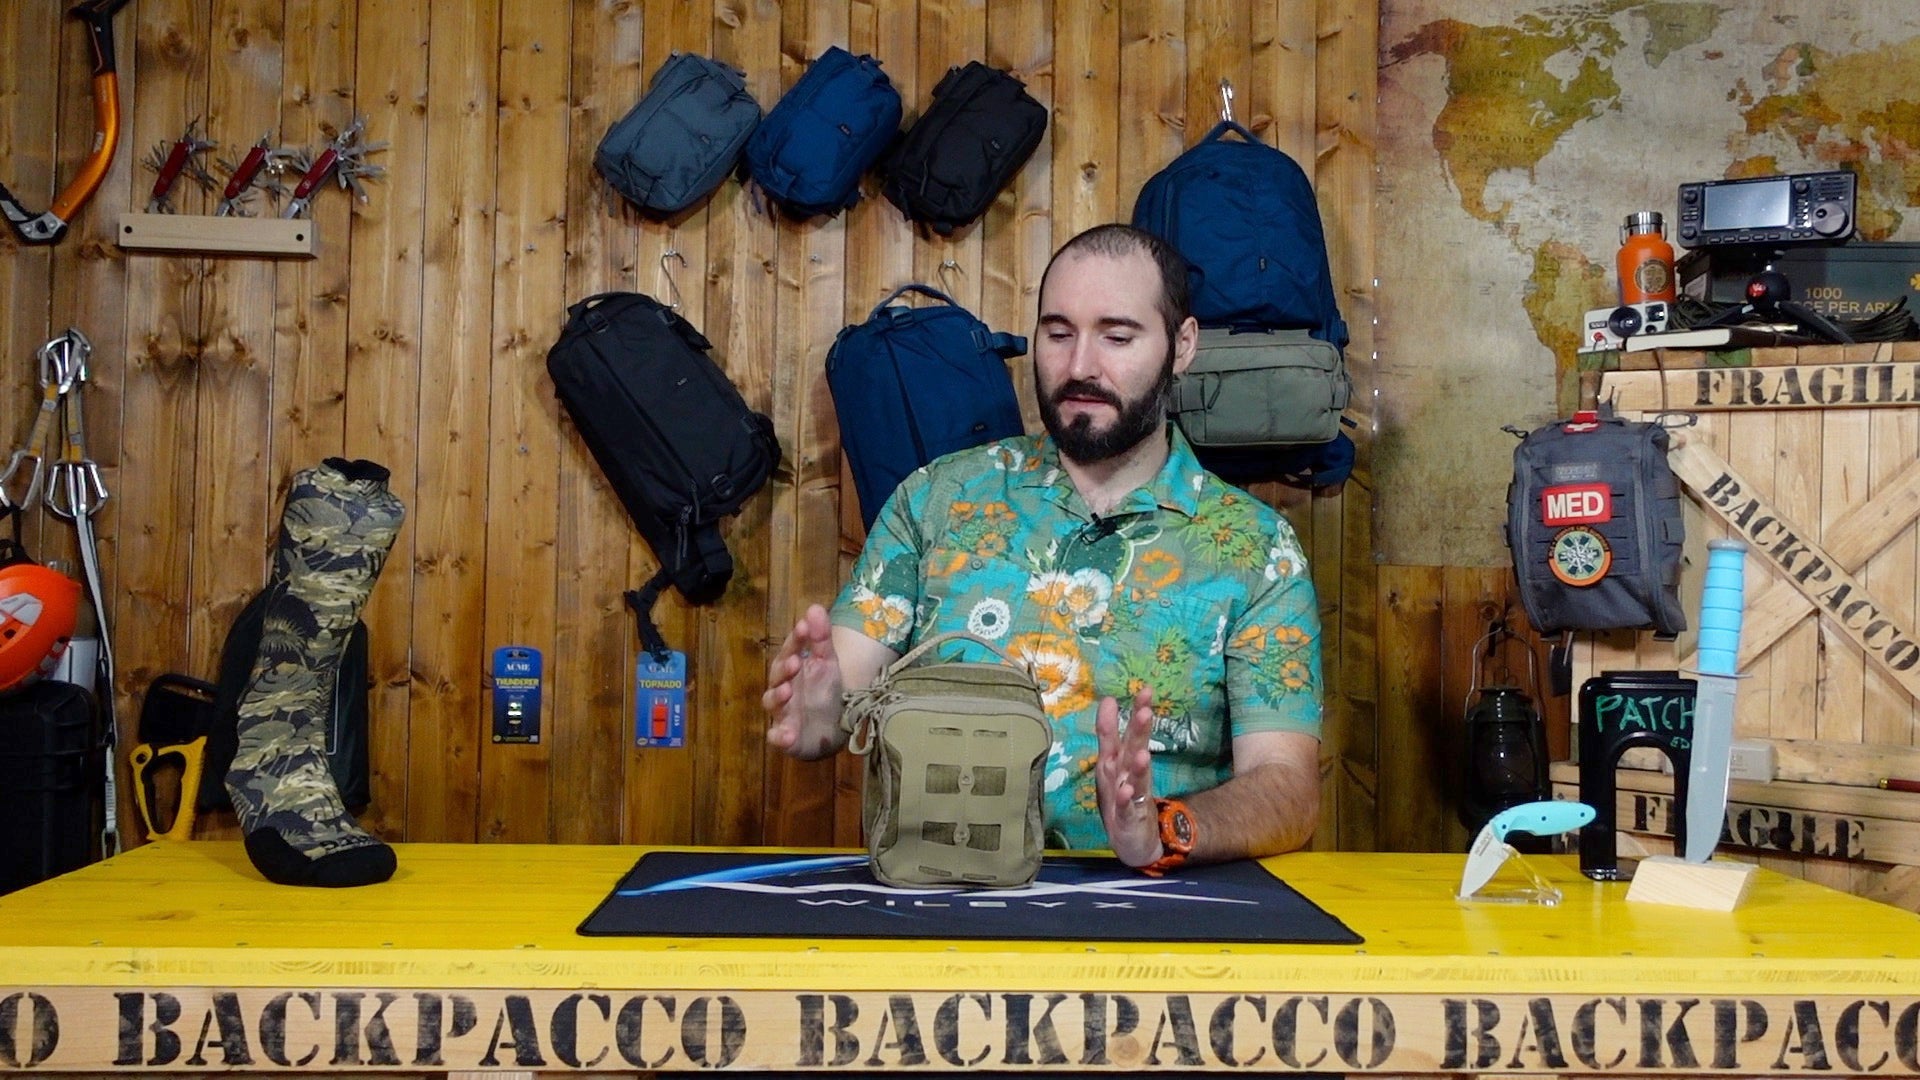 Paolo di Backpacco spiega la AUP accordion di Maxpedition